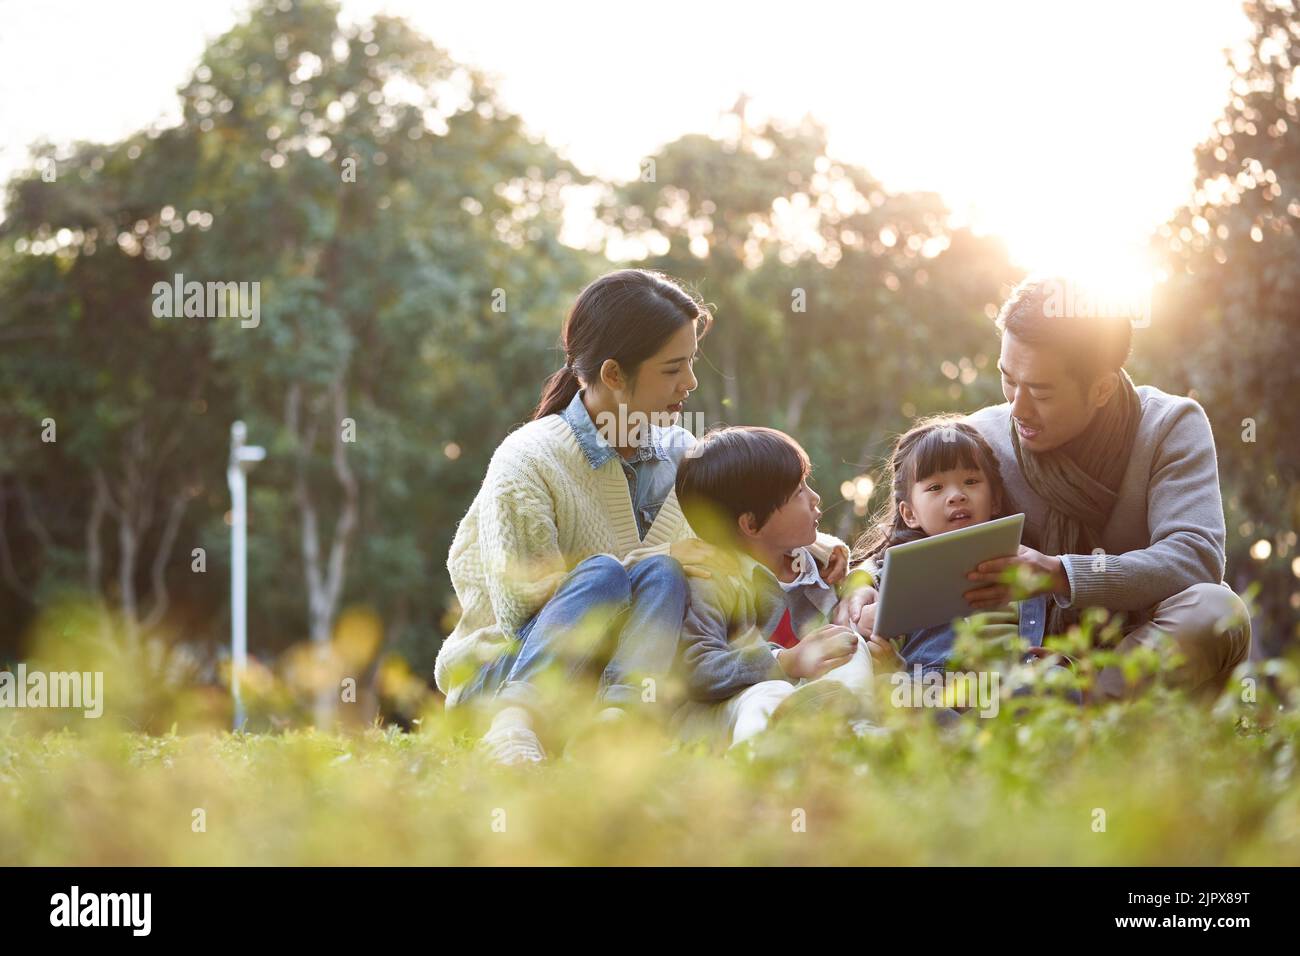 famille asiatique avec deux enfants se détendant à l'extérieur dans le parc de la ville Banque D'Images